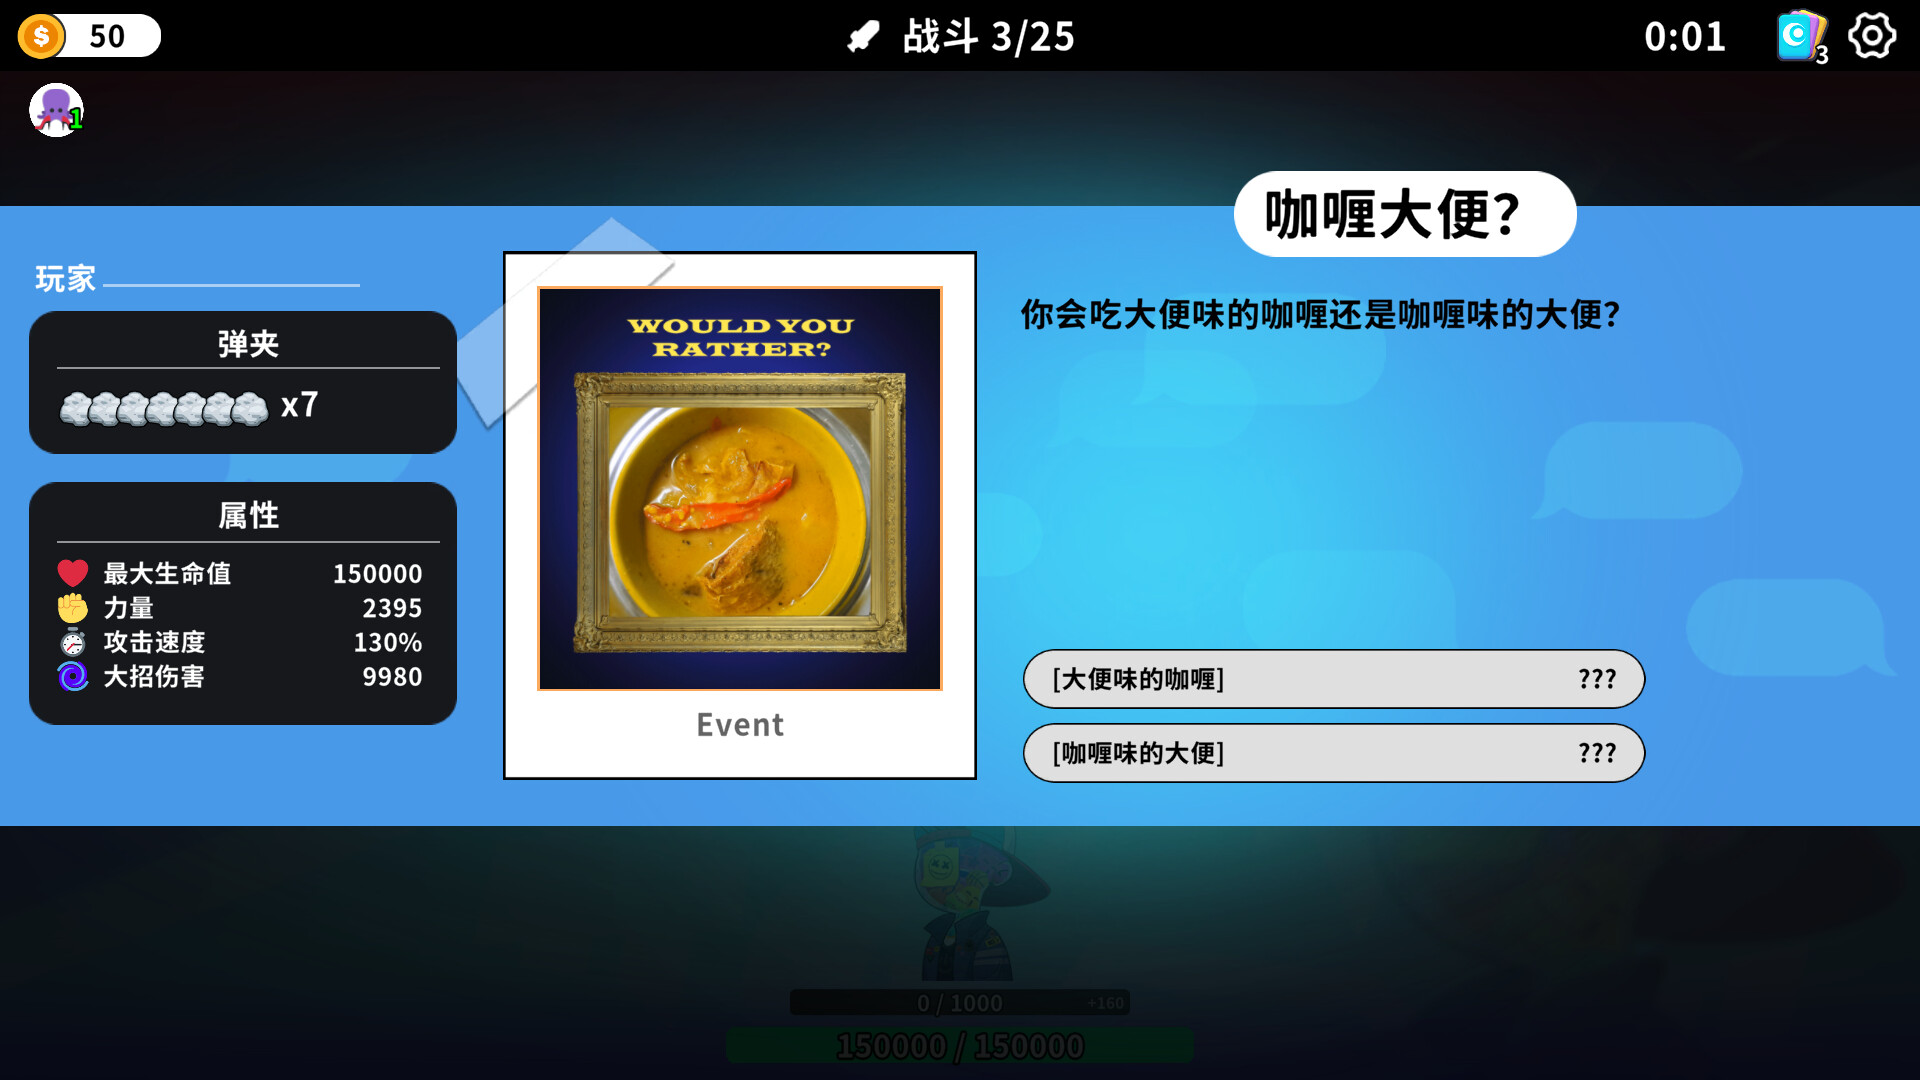 中文互聯網梗大雜燴惡搞遊戲《超級鍵盤俠》現已推出試玩Demo